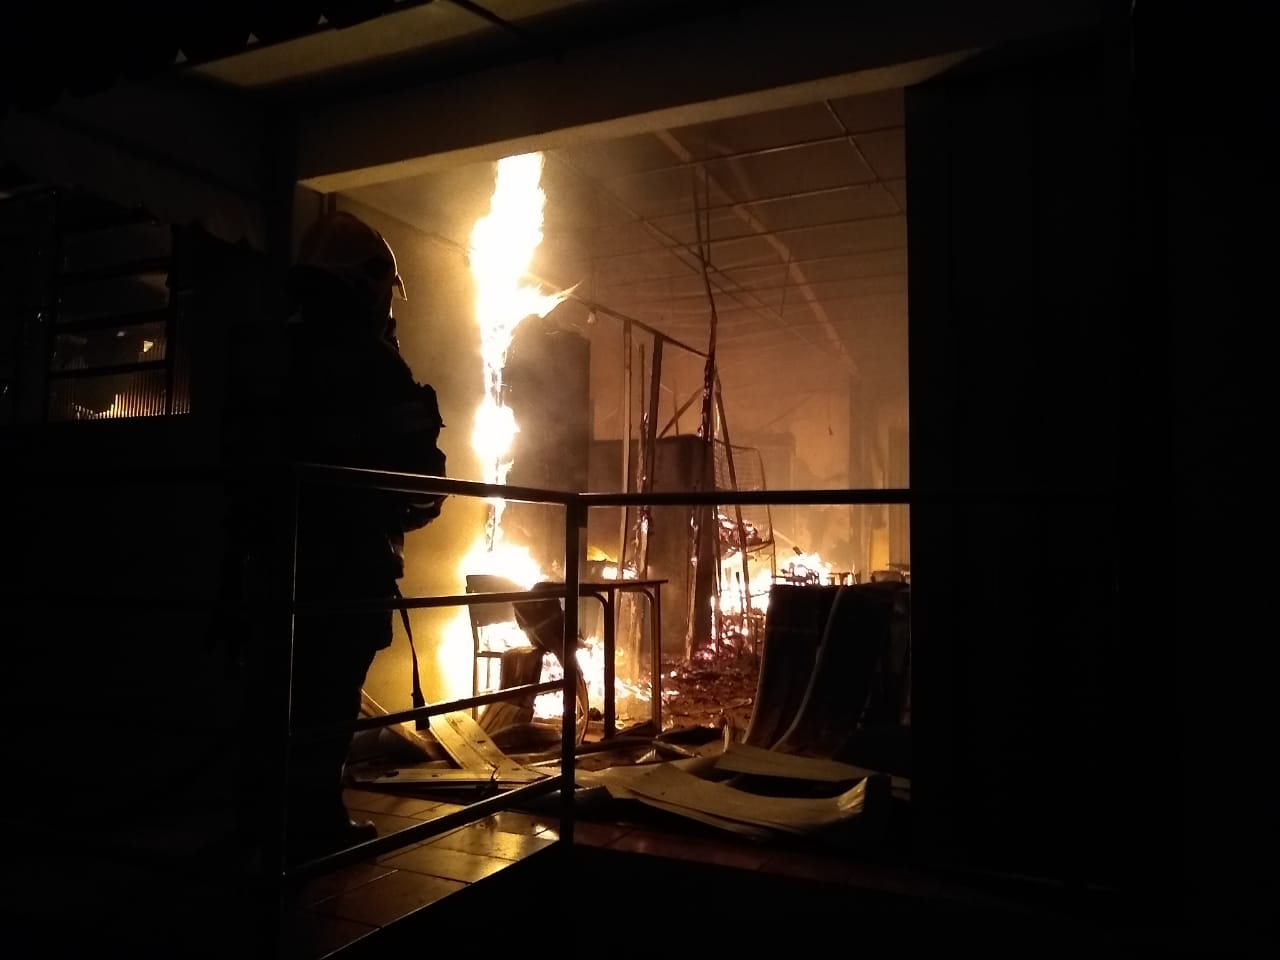 Segundo os Bombeiros, o incêndio provocou danos na estrutura do prédio, mas ninguém se feriu (Foto: Divulgação / Bombeiros)